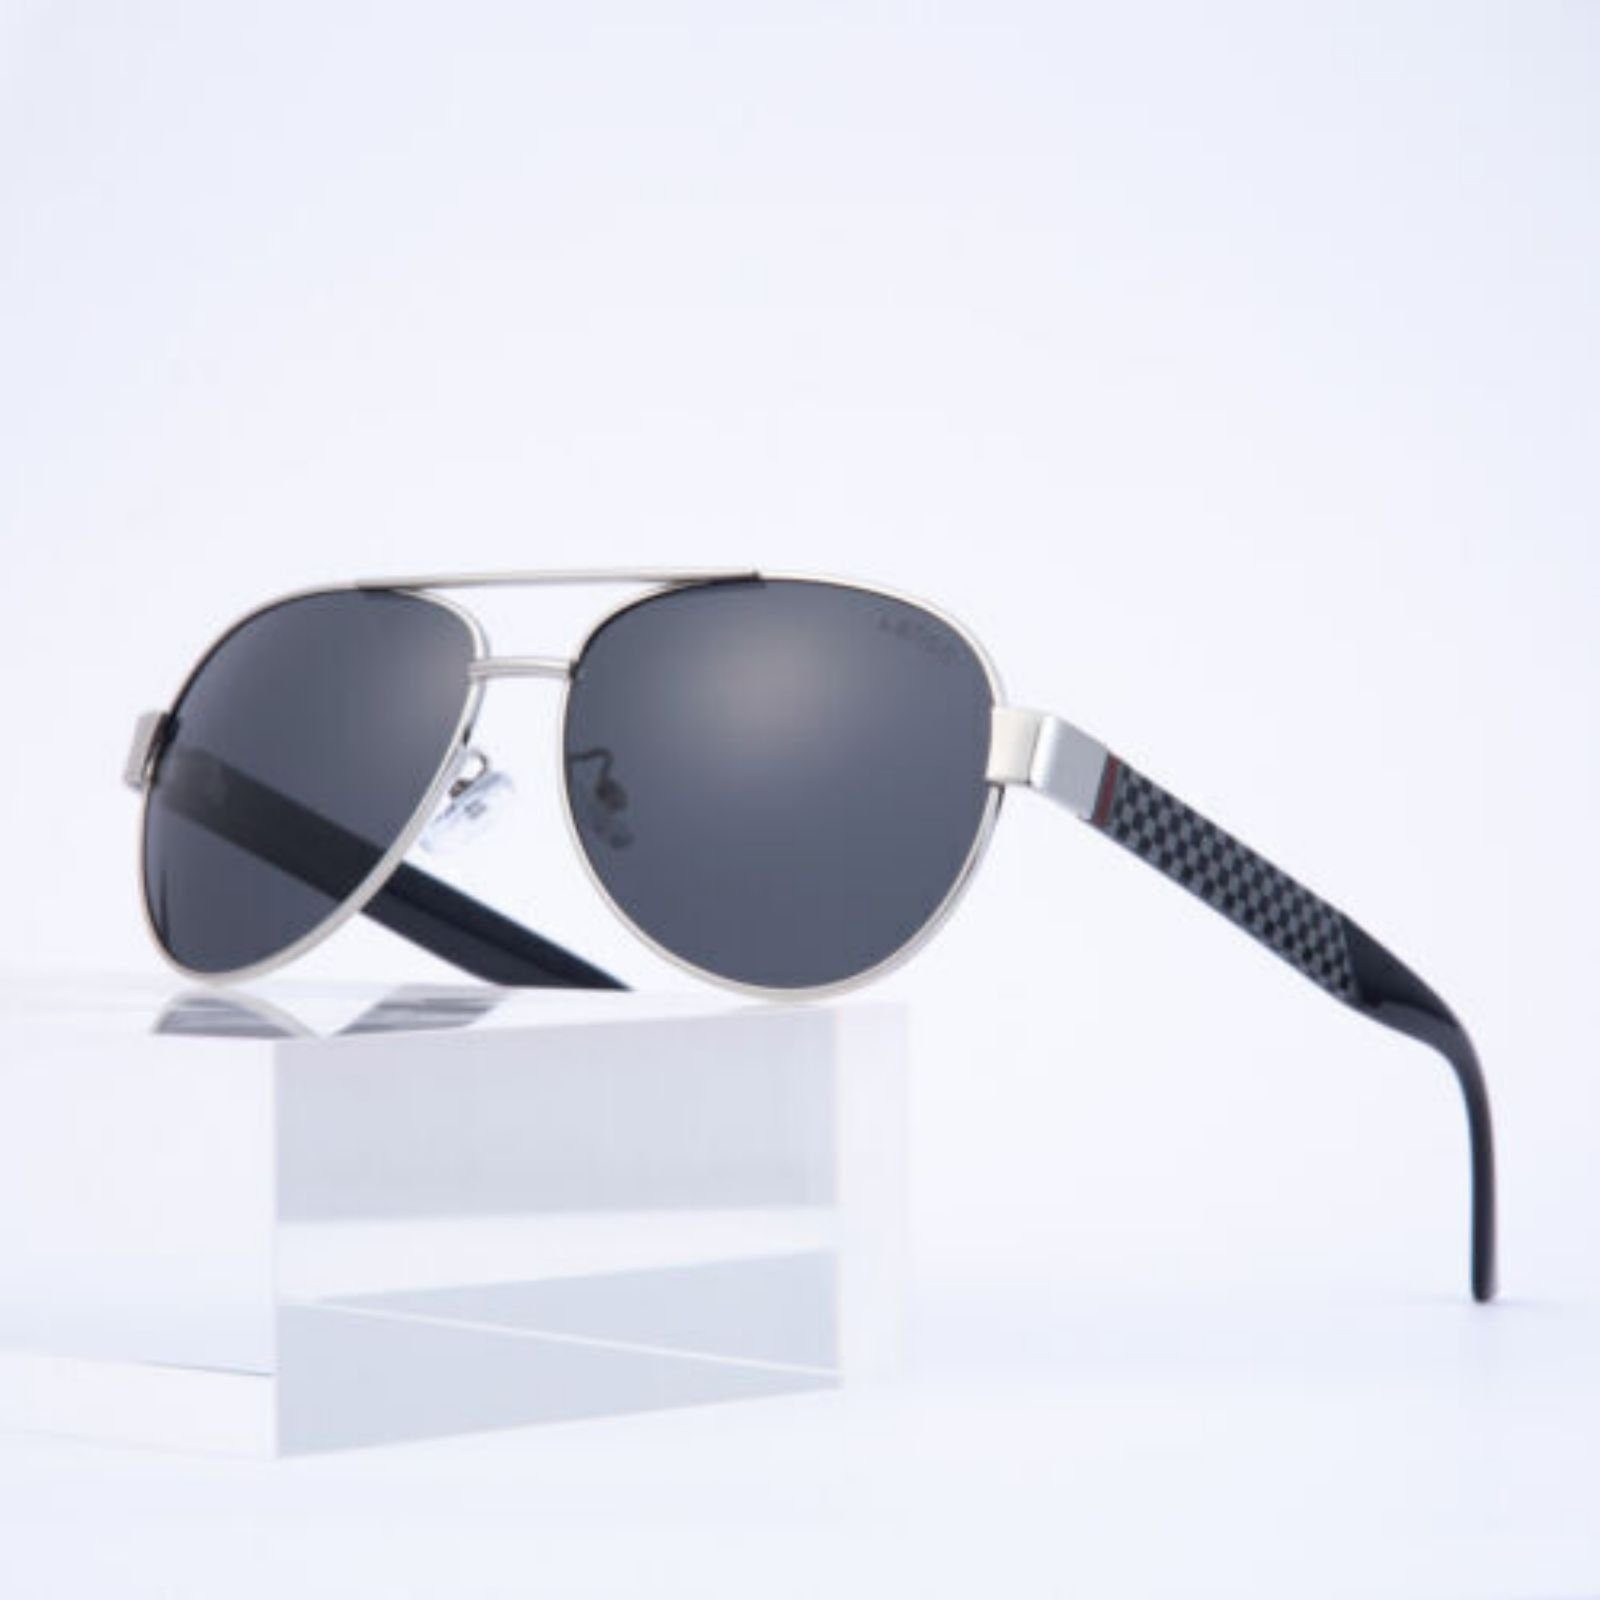 Lamon Sonnenbrille Polarisierte Sonnenbrille Unisex UV400 Polarisierte Sonnenbrille Silber grau